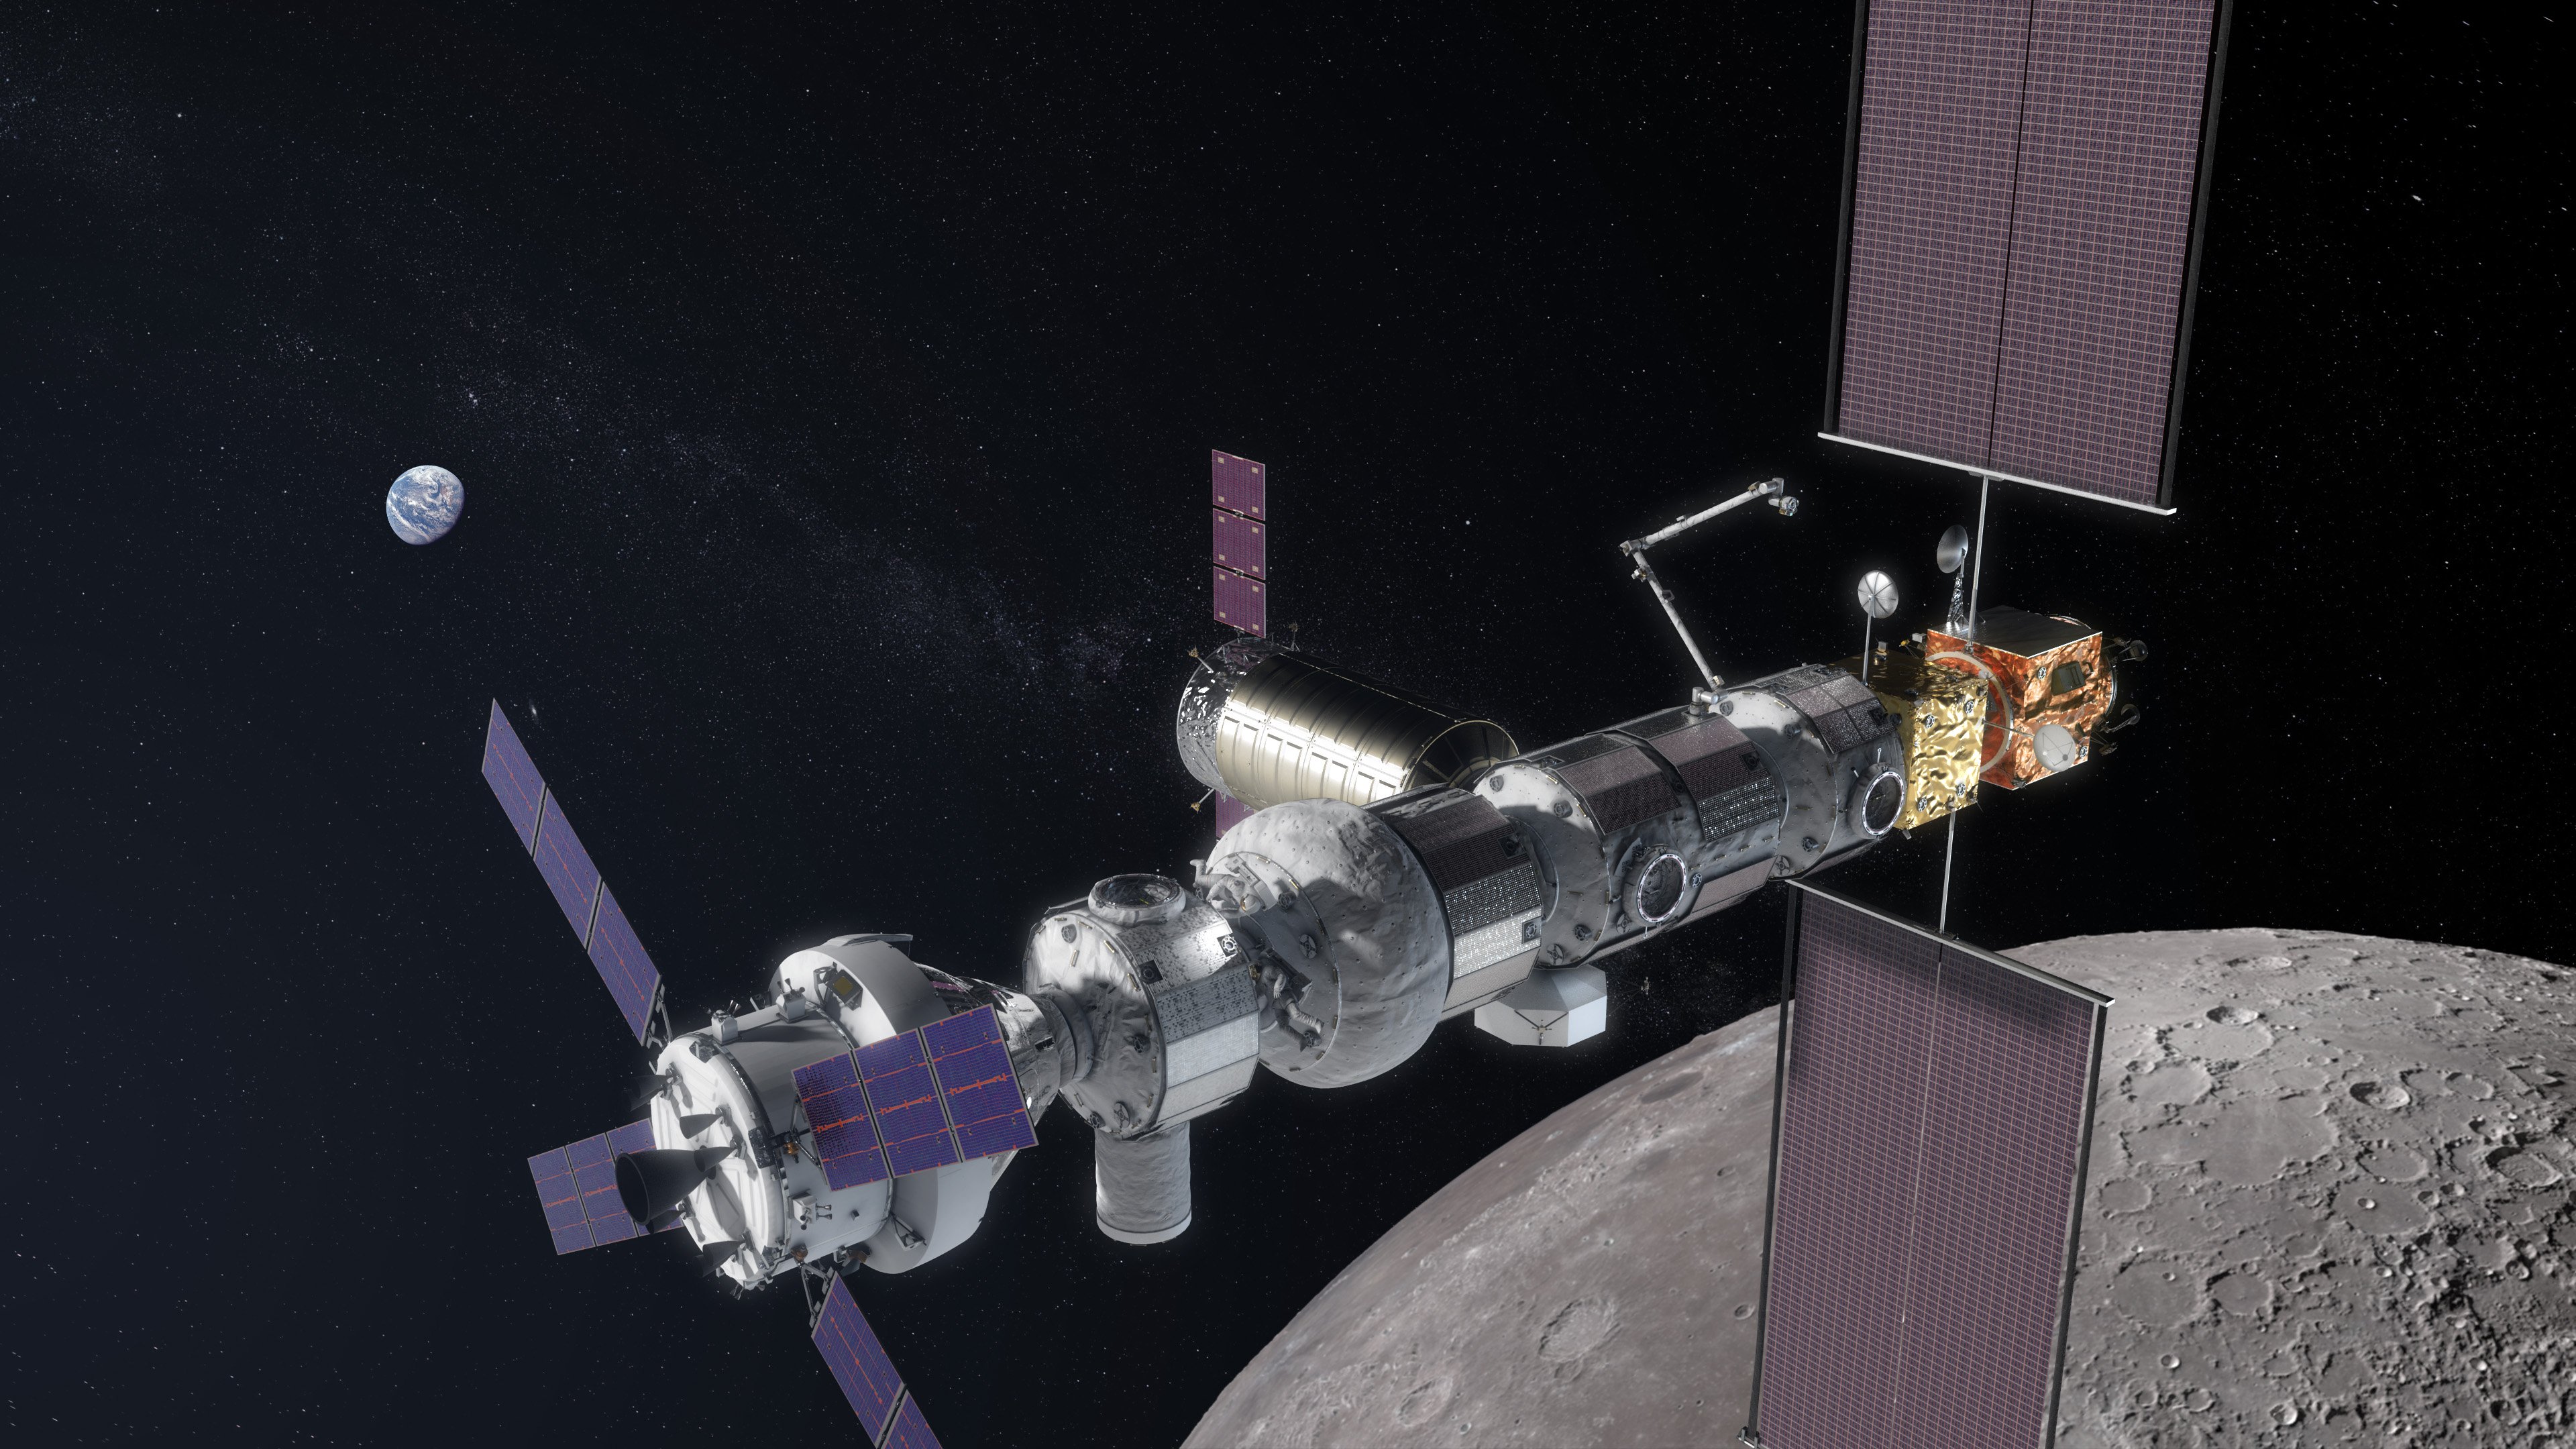 ISS vogliono chiudere? Gli stati UNITI lanceranno al chiaro di luna stazione nel 2023